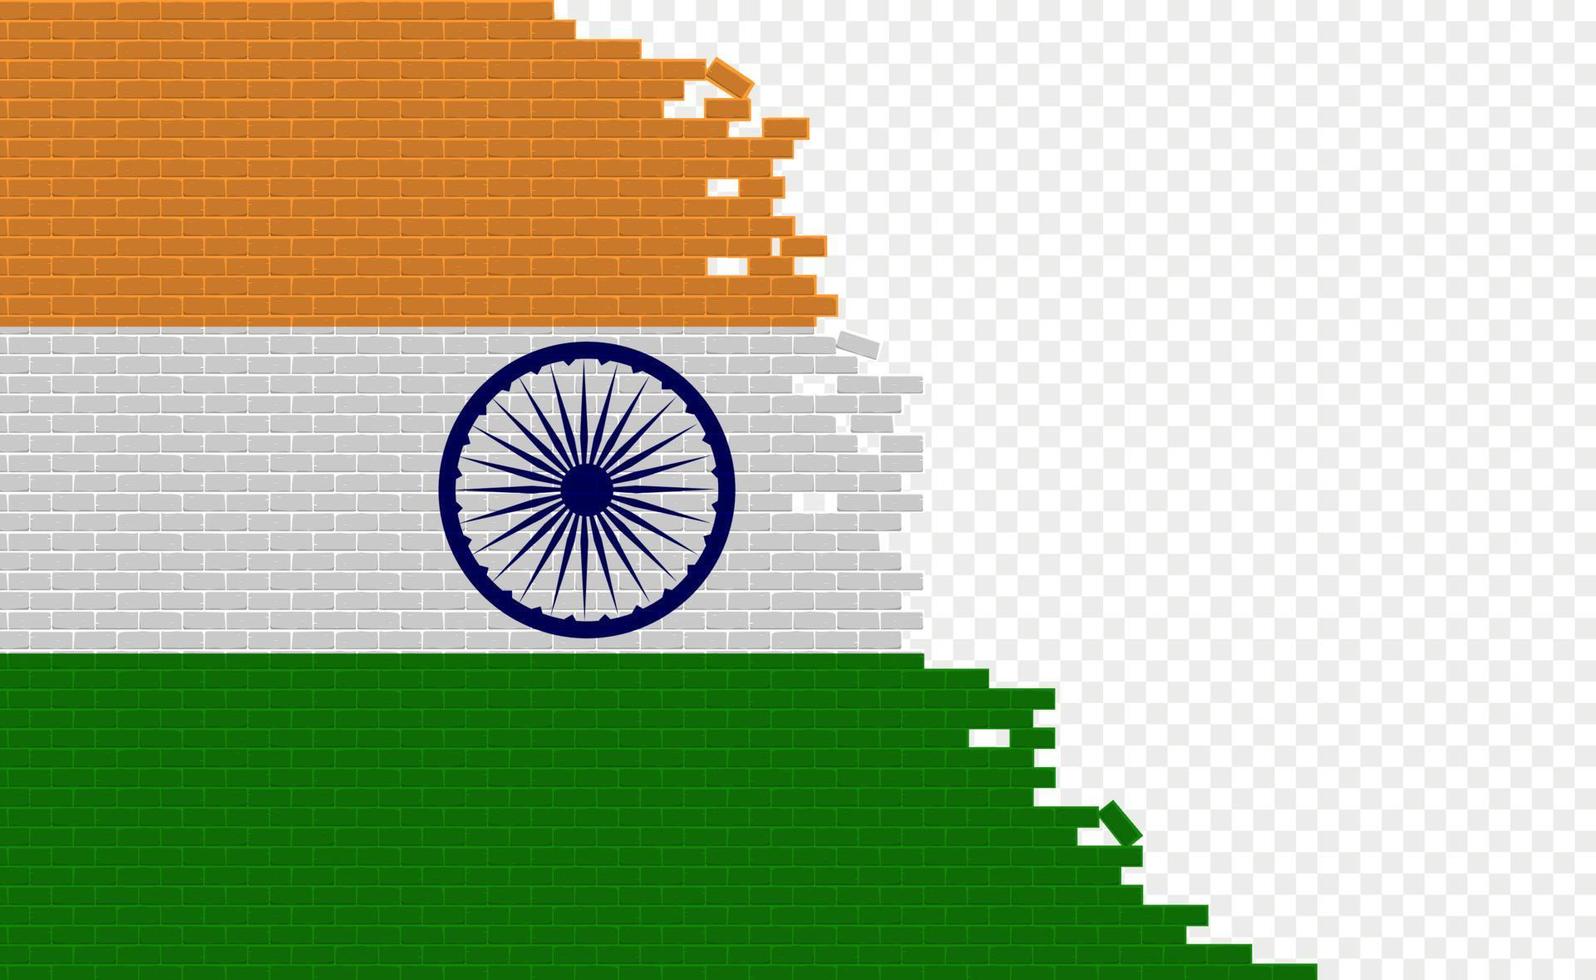 bandera india en la pared de ladrillos rotos. campo de bandera vacío de otro país. comparación de países. fácil edición y vector en grupos.